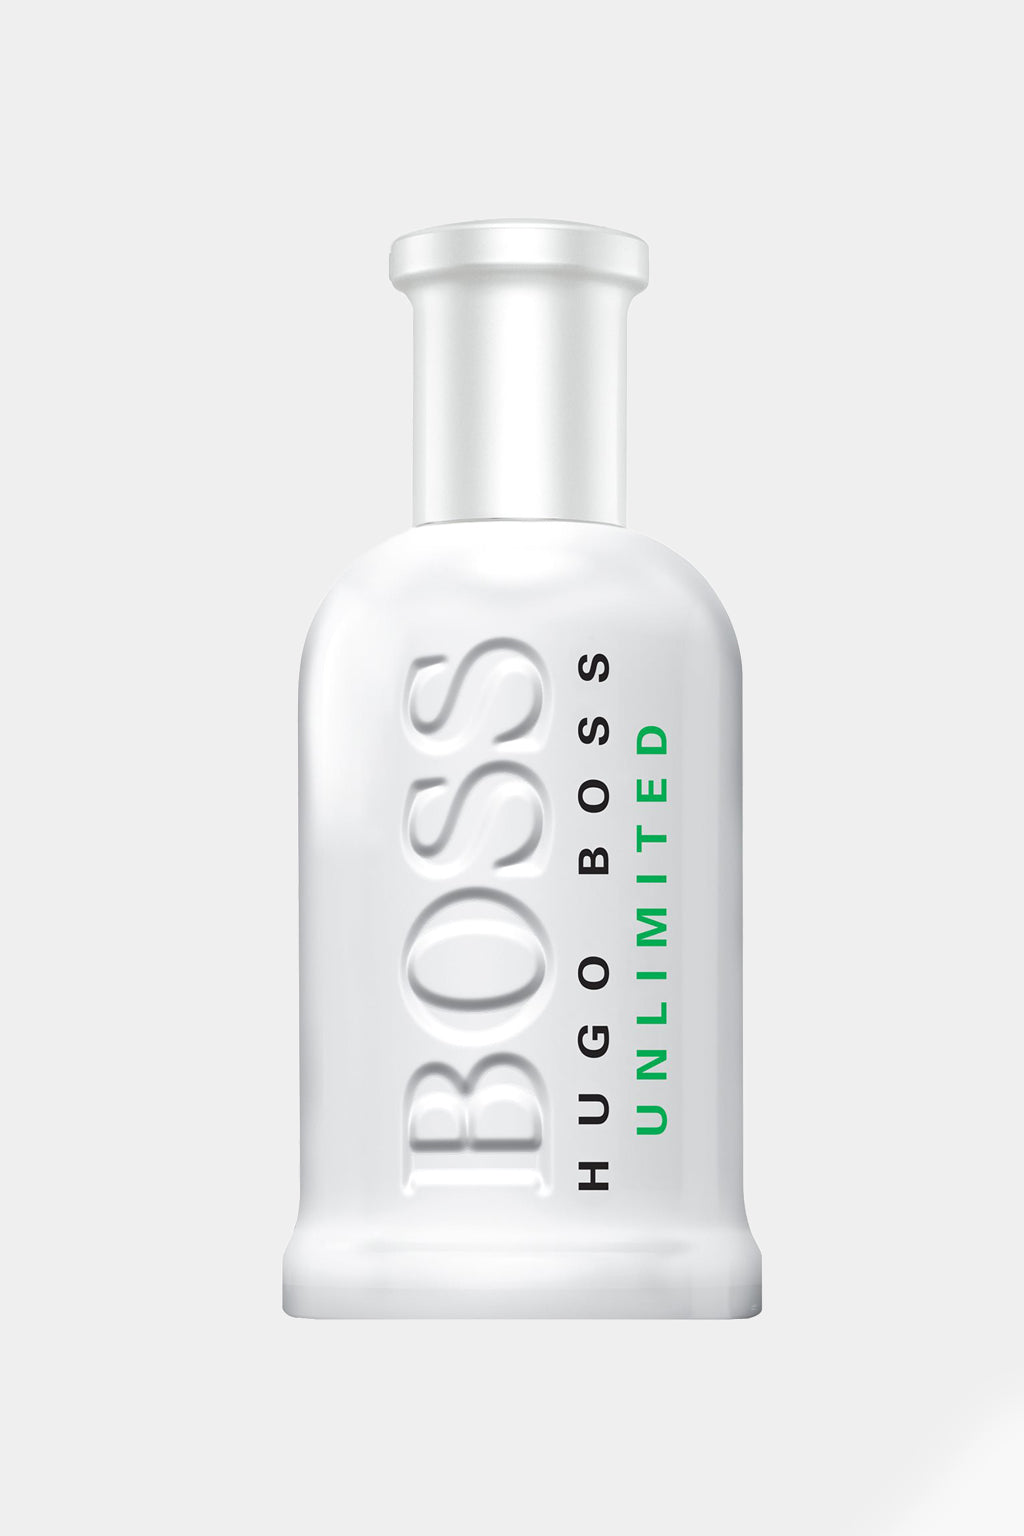 Hugo Boss - Bottled Unlimited Eau de Toilette